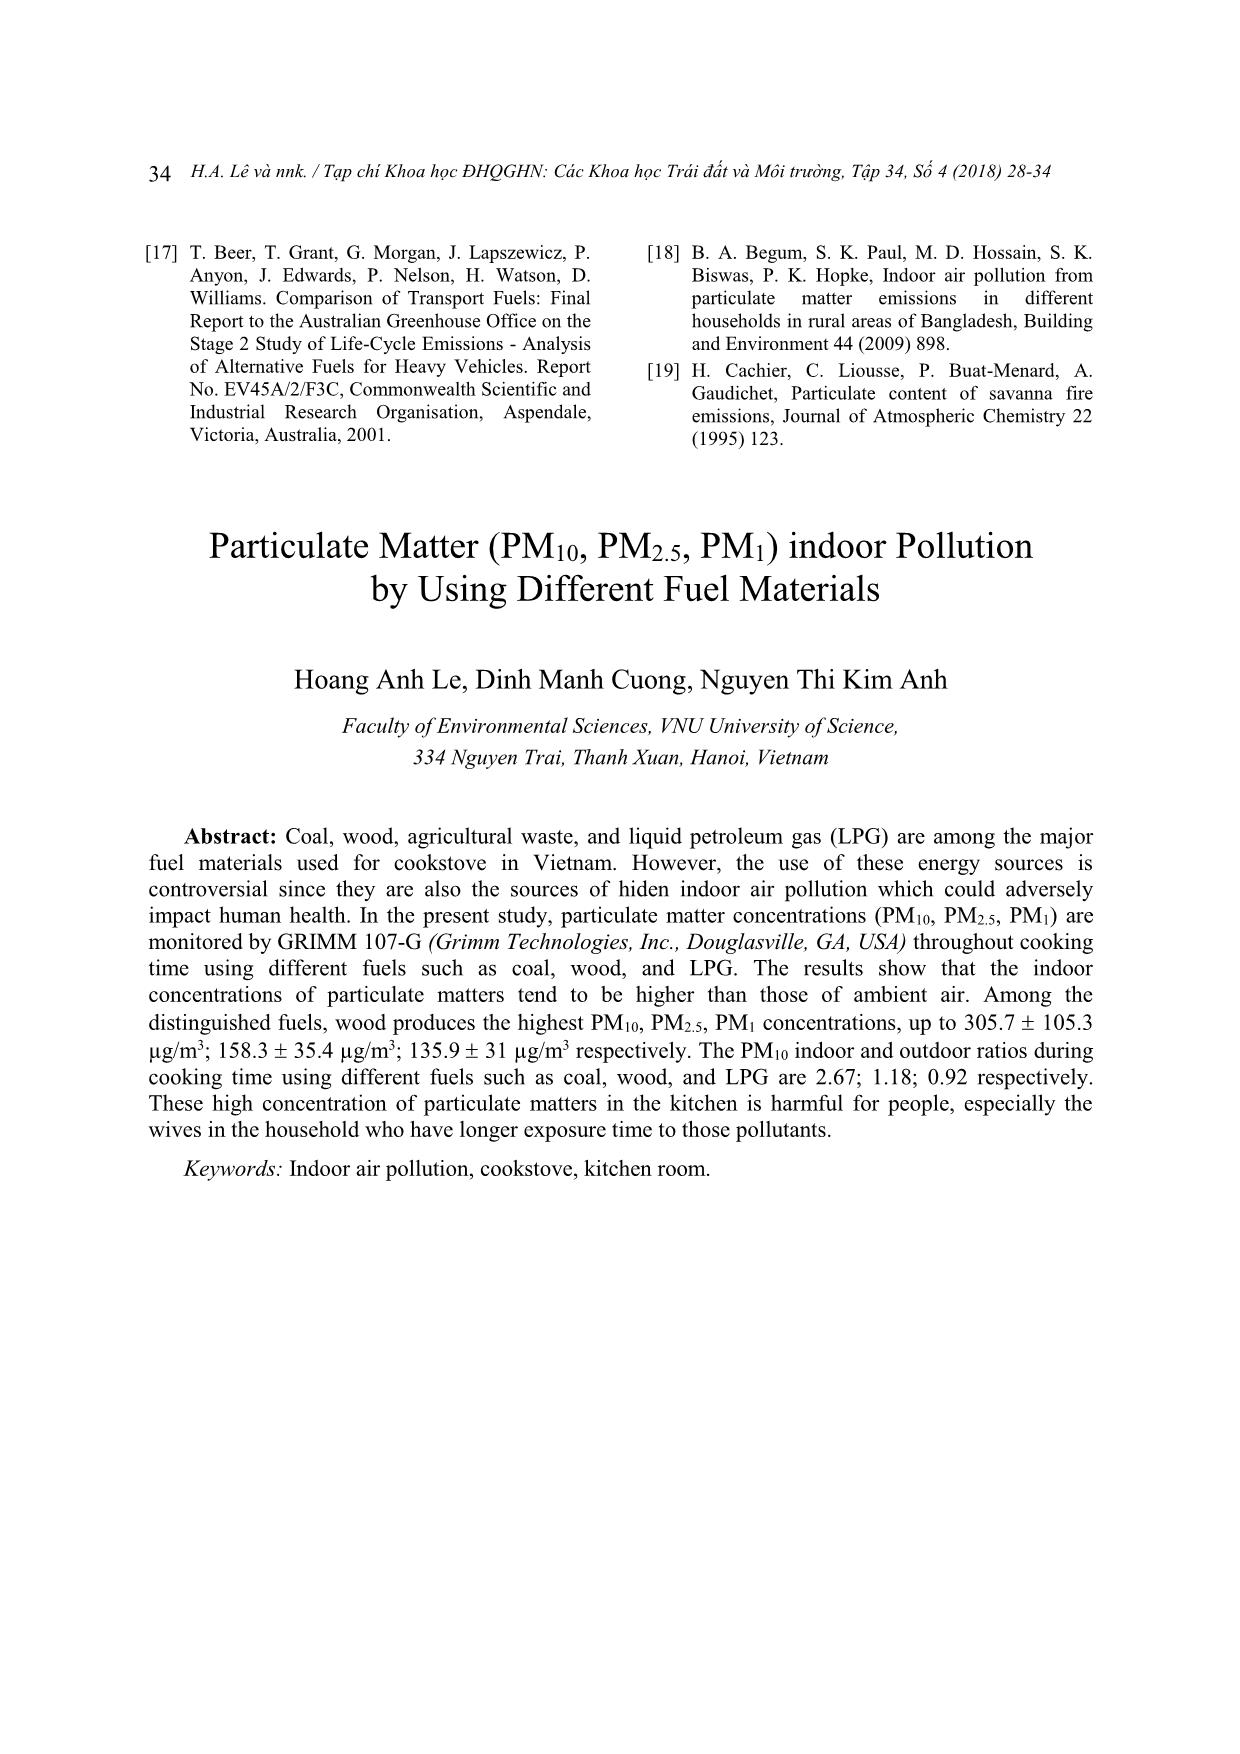 Ô nhiễm không khí trong nhà và ngoài trời bởi bụi (PM10, PM2.5, PM1) khi sử dụng các loại nhiên liệu đun nấu khác nhau trang 7